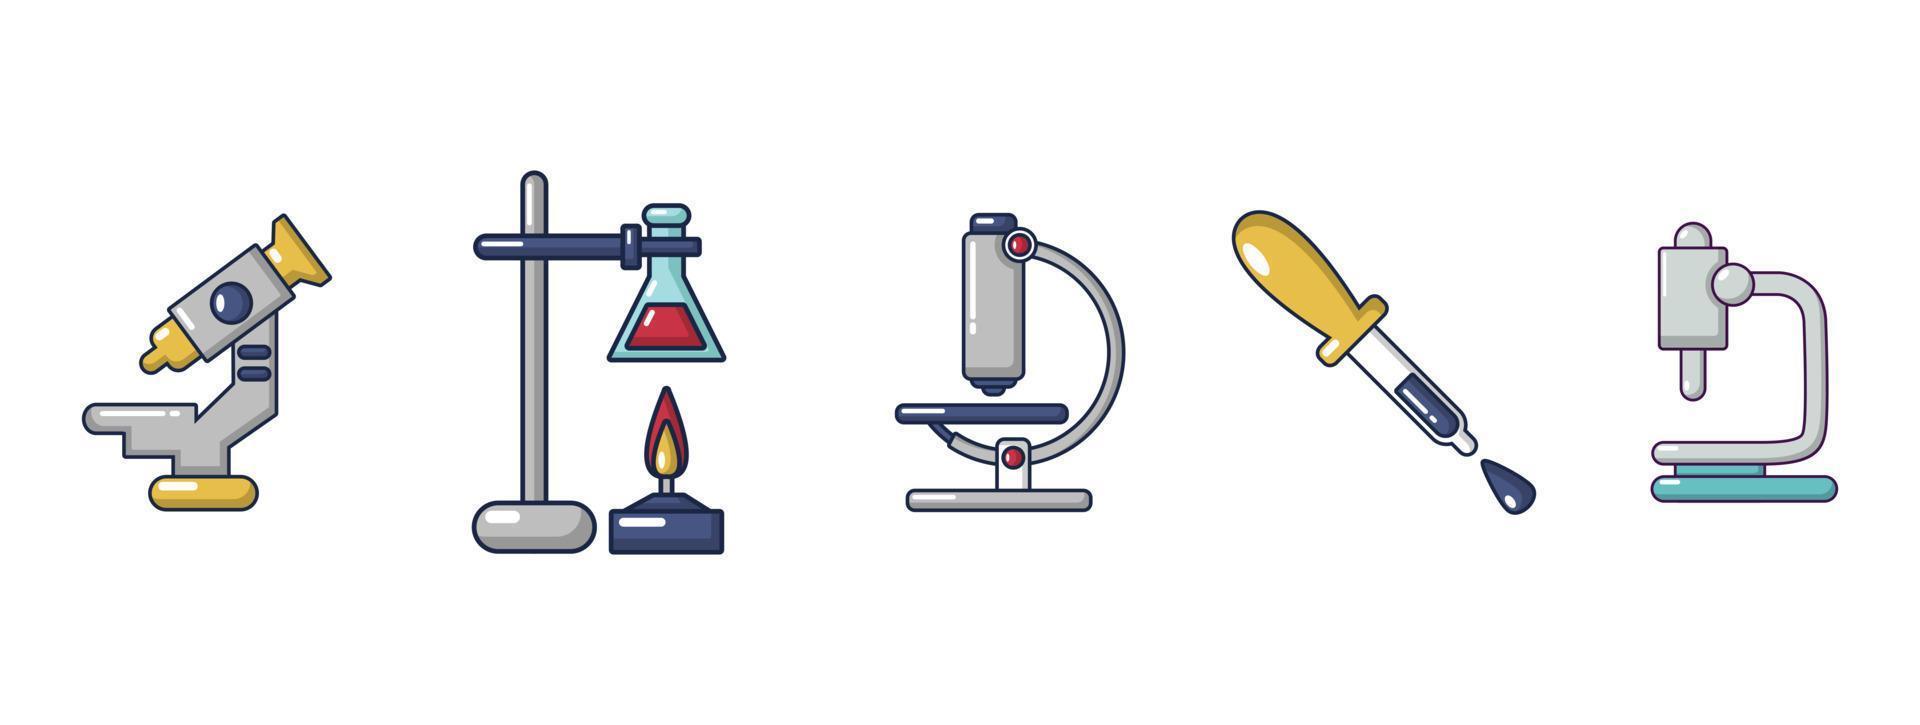 conjunto de ícones de ferramentas químicas, estilo cartoon vetor